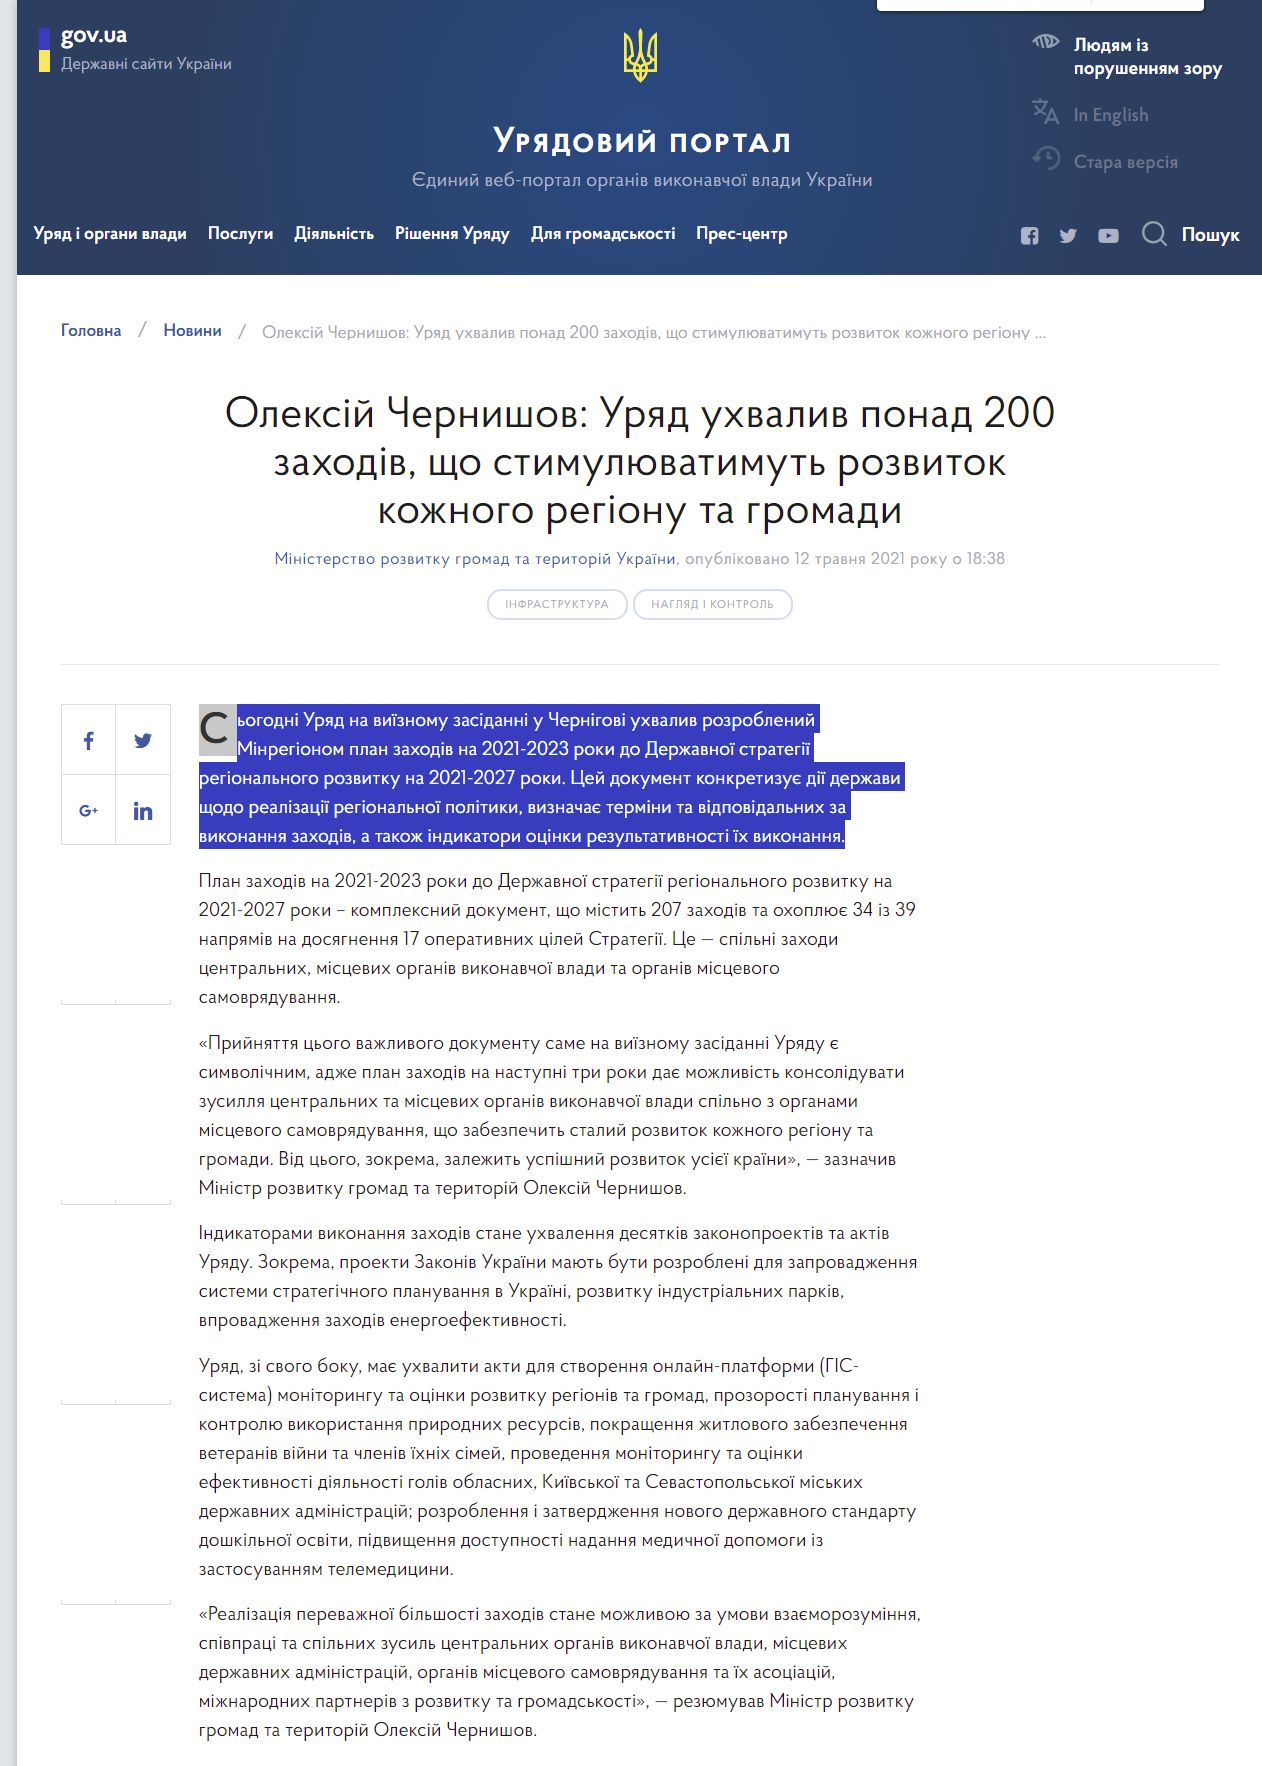 https://www.kmu.gov.ua/news/oleksij-chernishov-uryad-uhvaliv-ponad-200-zahodiv-shcho-stimulyuvatimut-rozvitok-kozhnogo-regionu-ta-gromadi